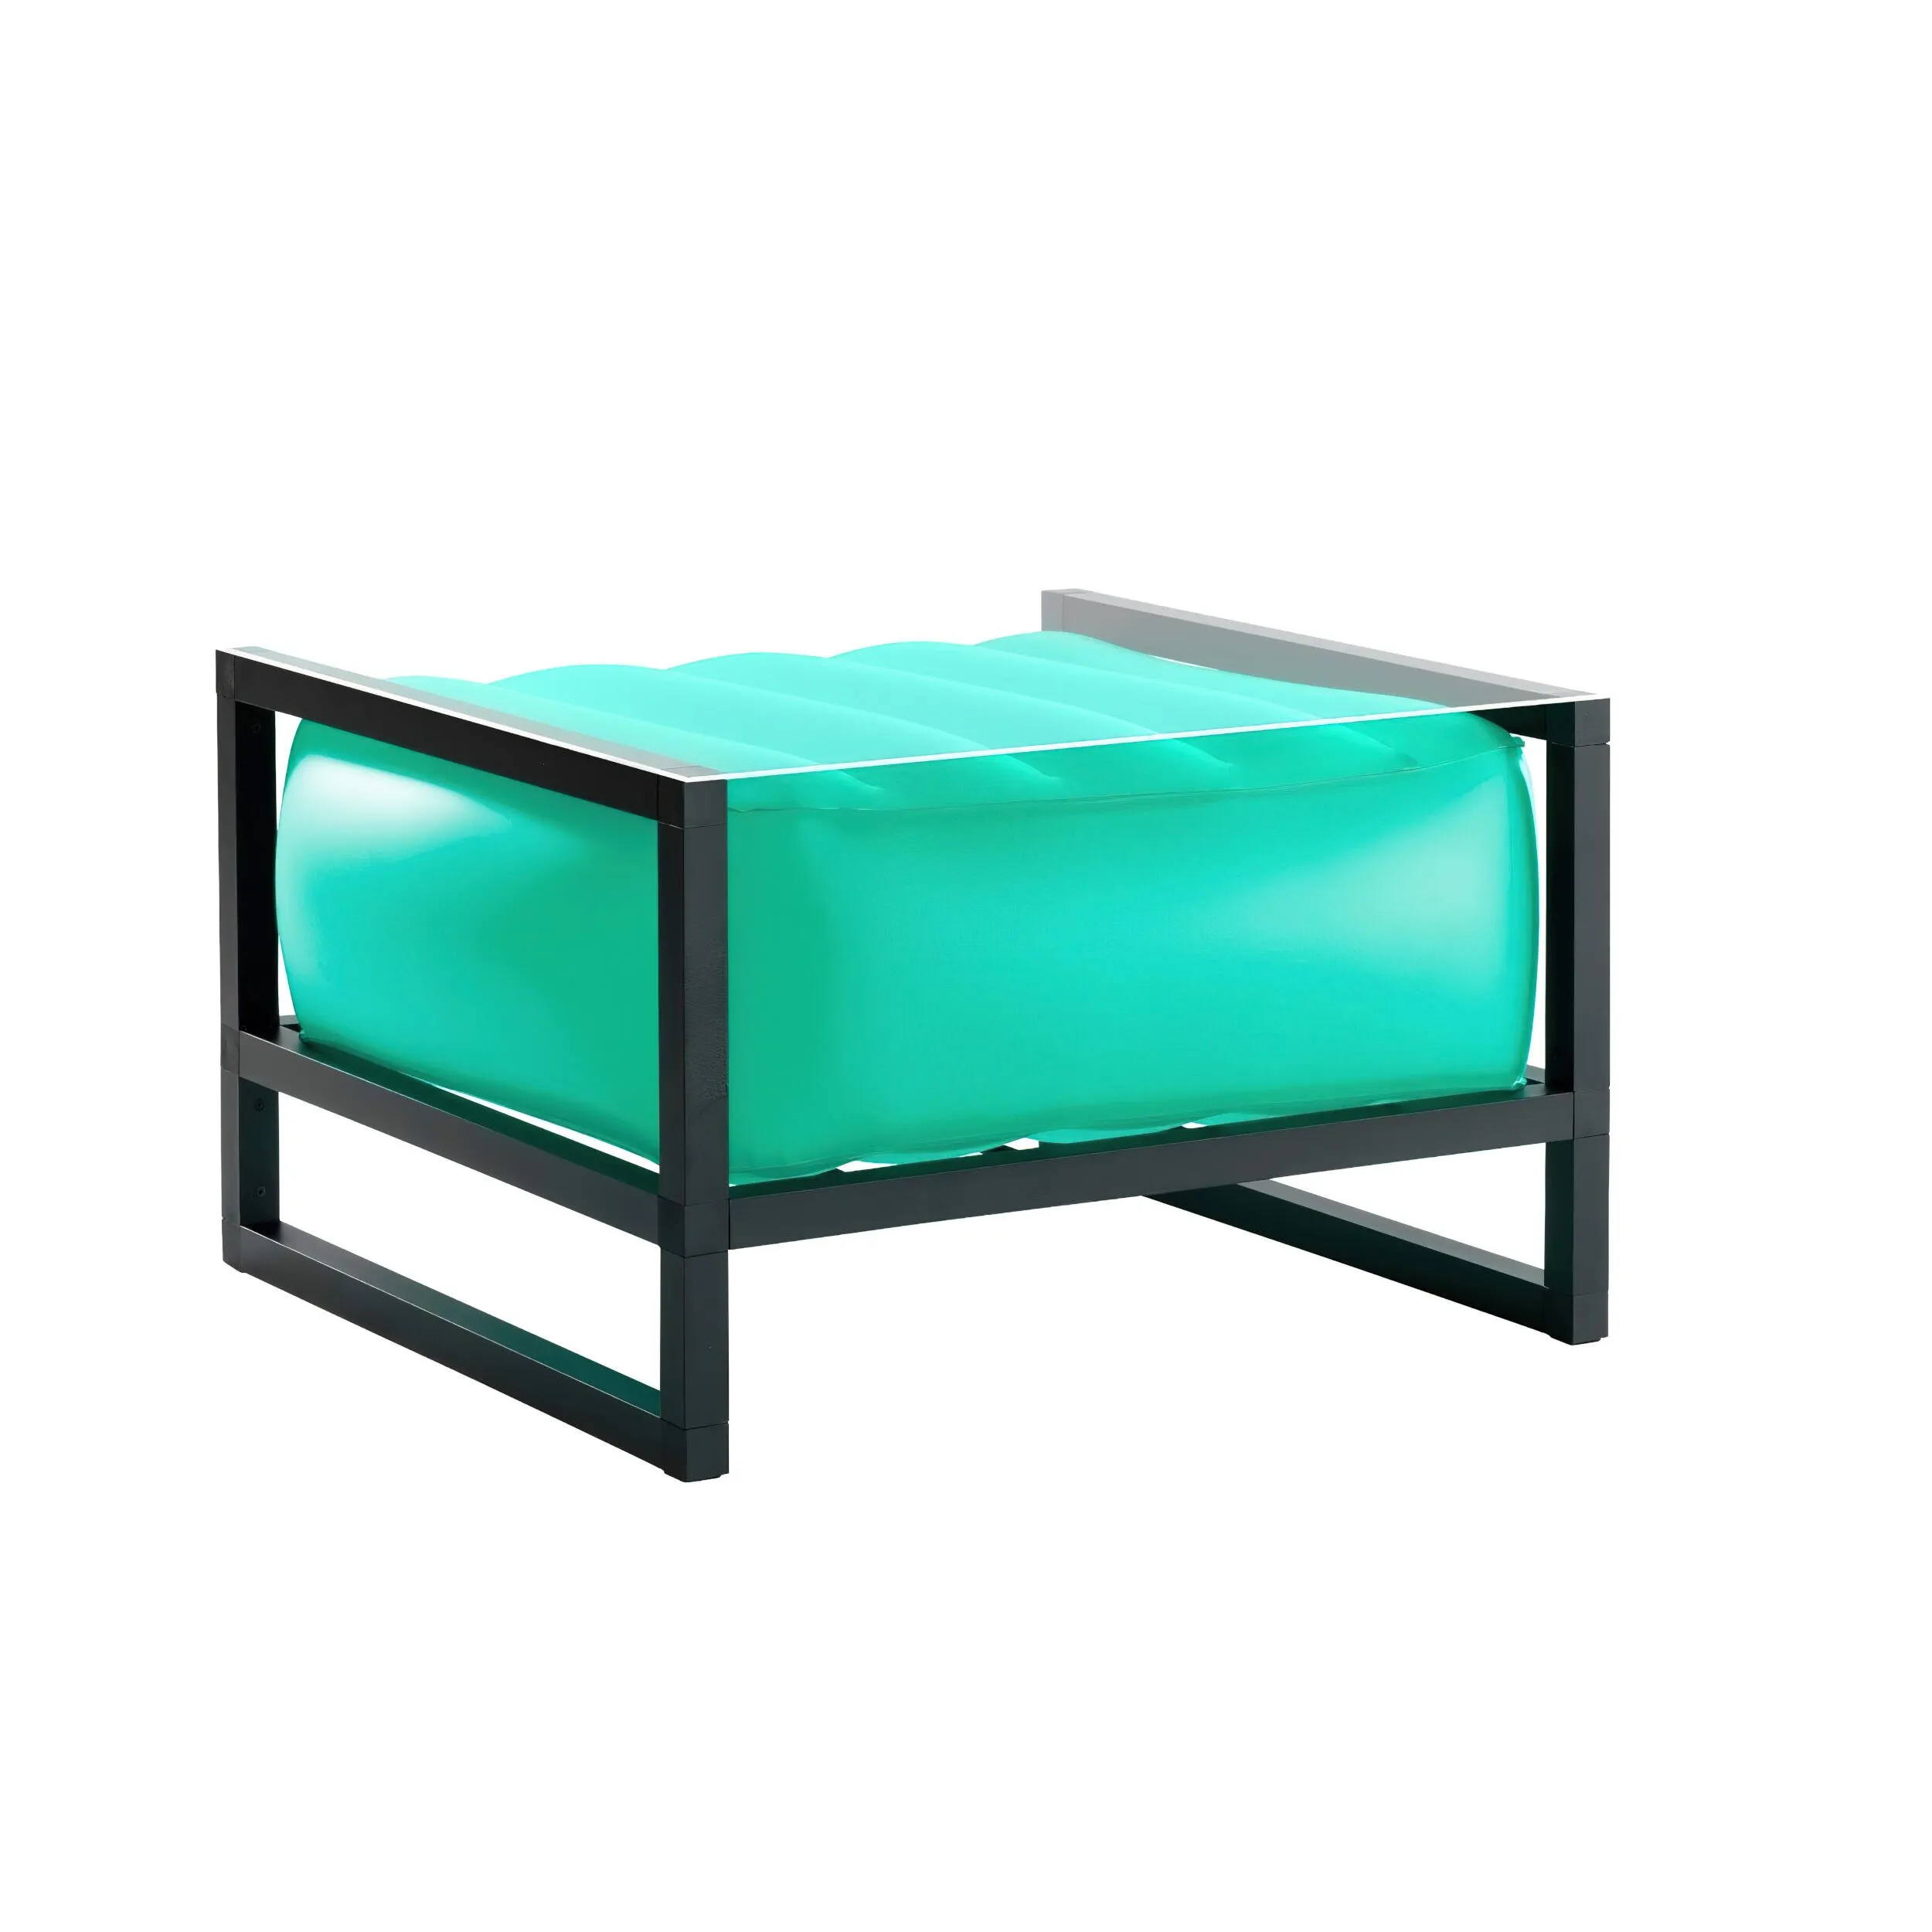 tavolino da salotto Yomi eko illuminato struttura in legno naturale, dimensioni 62x70xH40 cm peso 14 kg, seduta gonfiabile in TPU colore verde traslucido